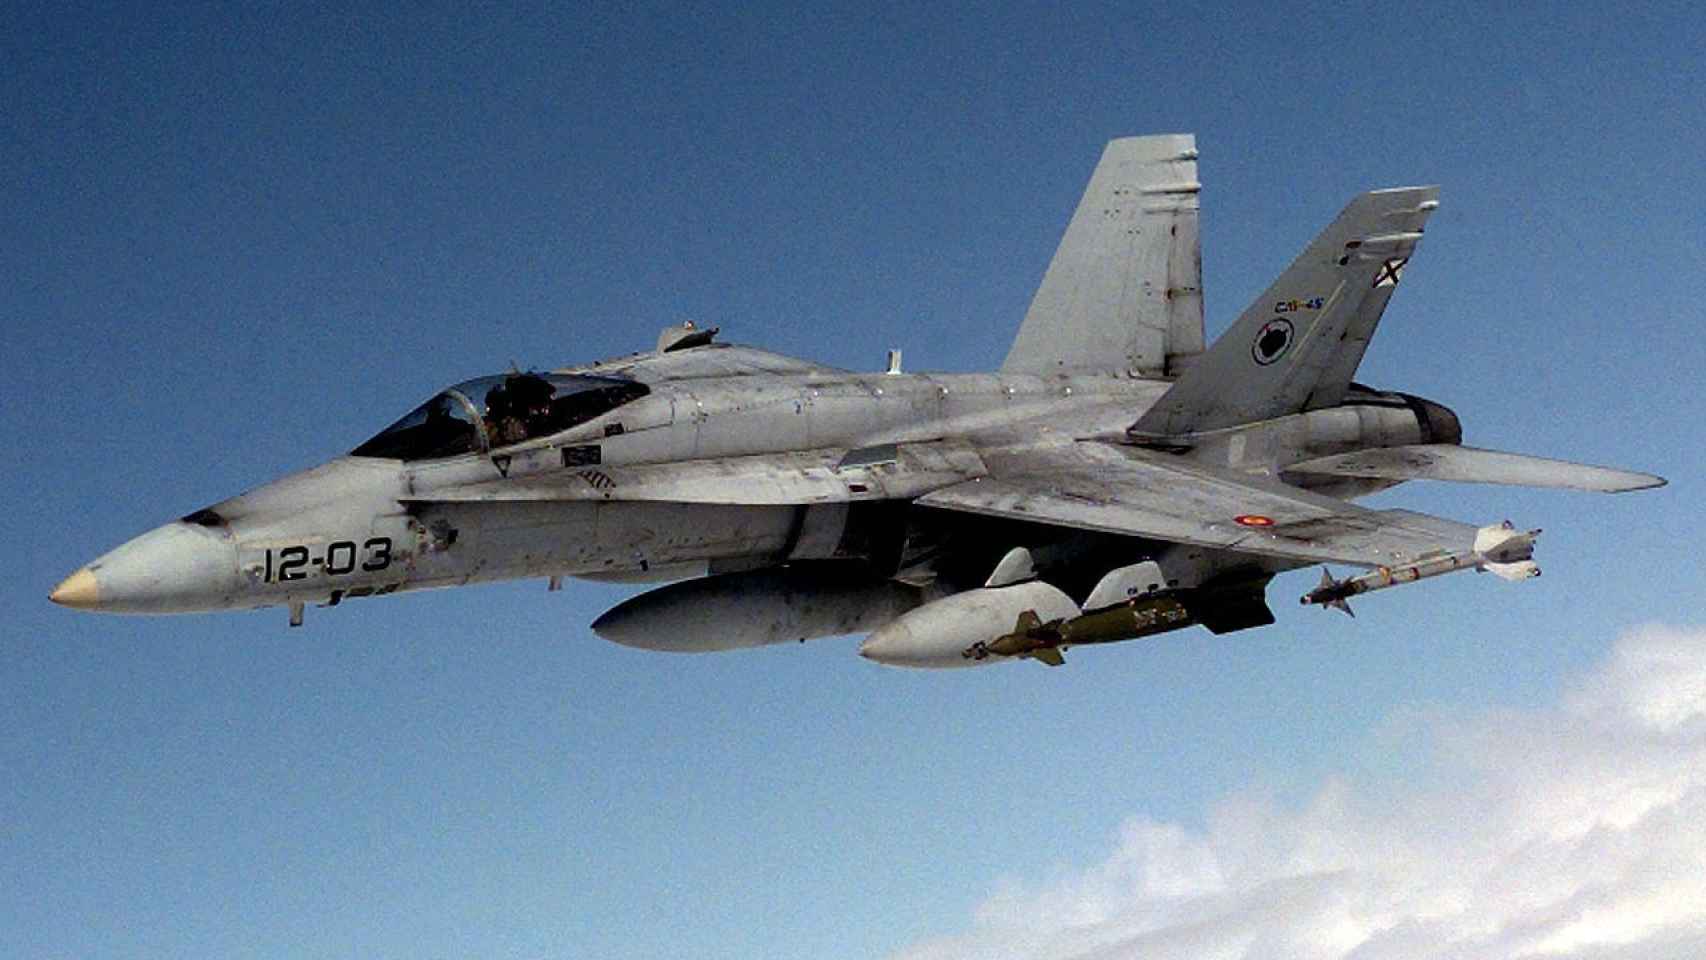 El protagonista del episodio es un F-18 del Ala 12, como el de la imagen.